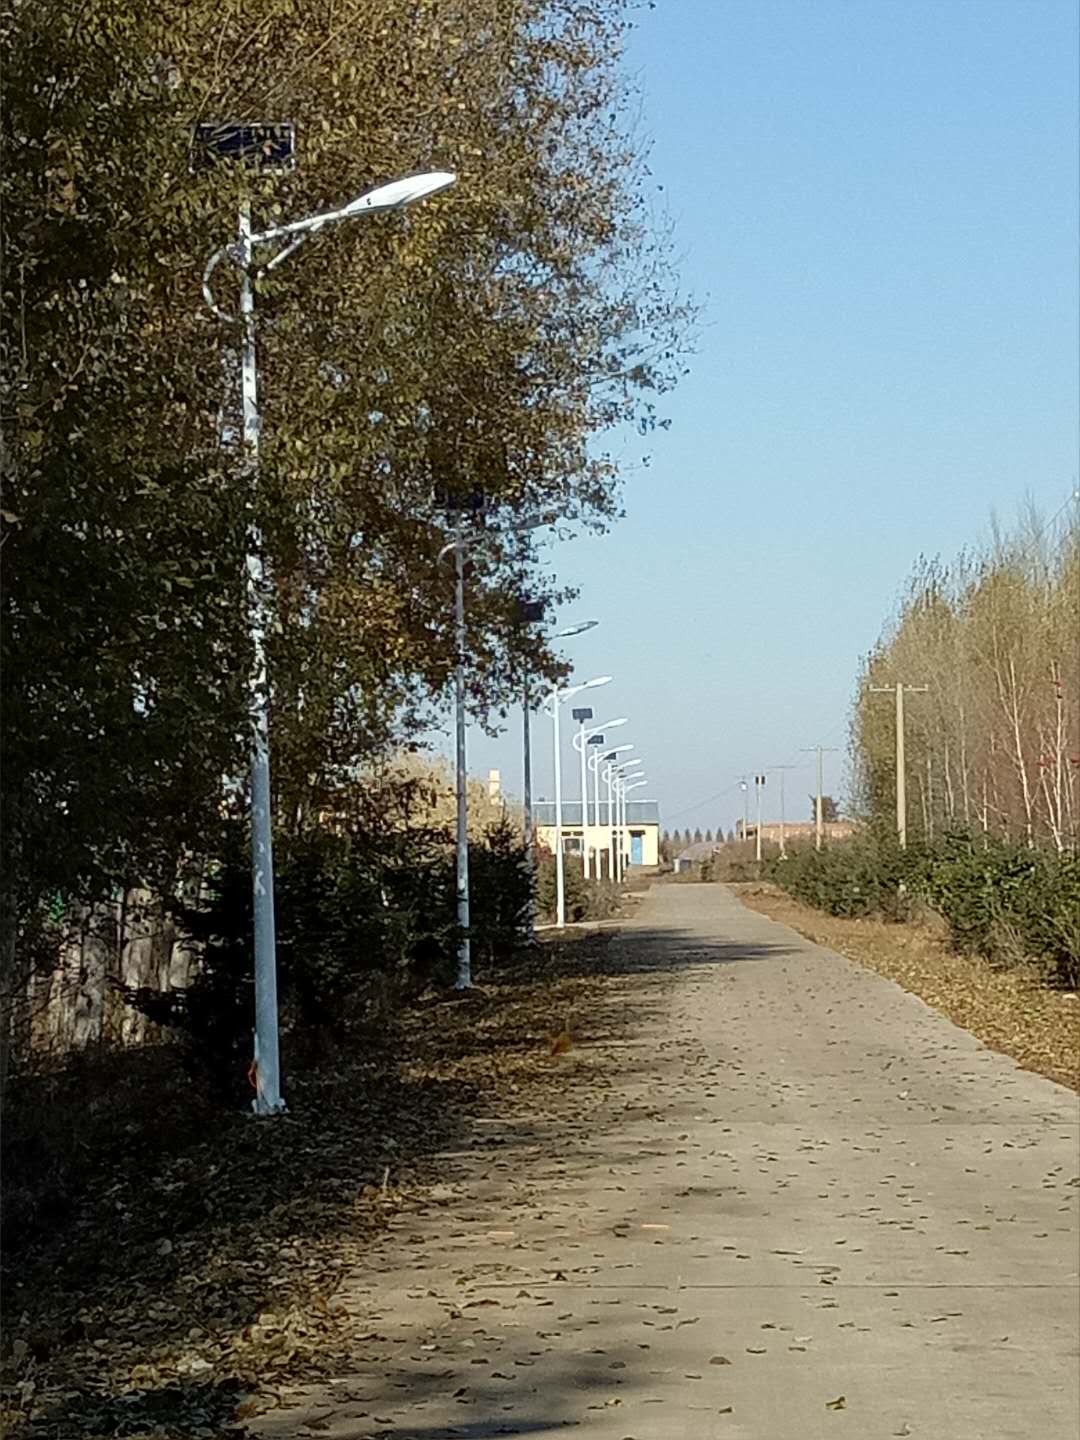 哈尔滨太阳能路灯6米15瓦-哈尔滨扶贫项目适用太阳能路灯-太阳能农村路灯